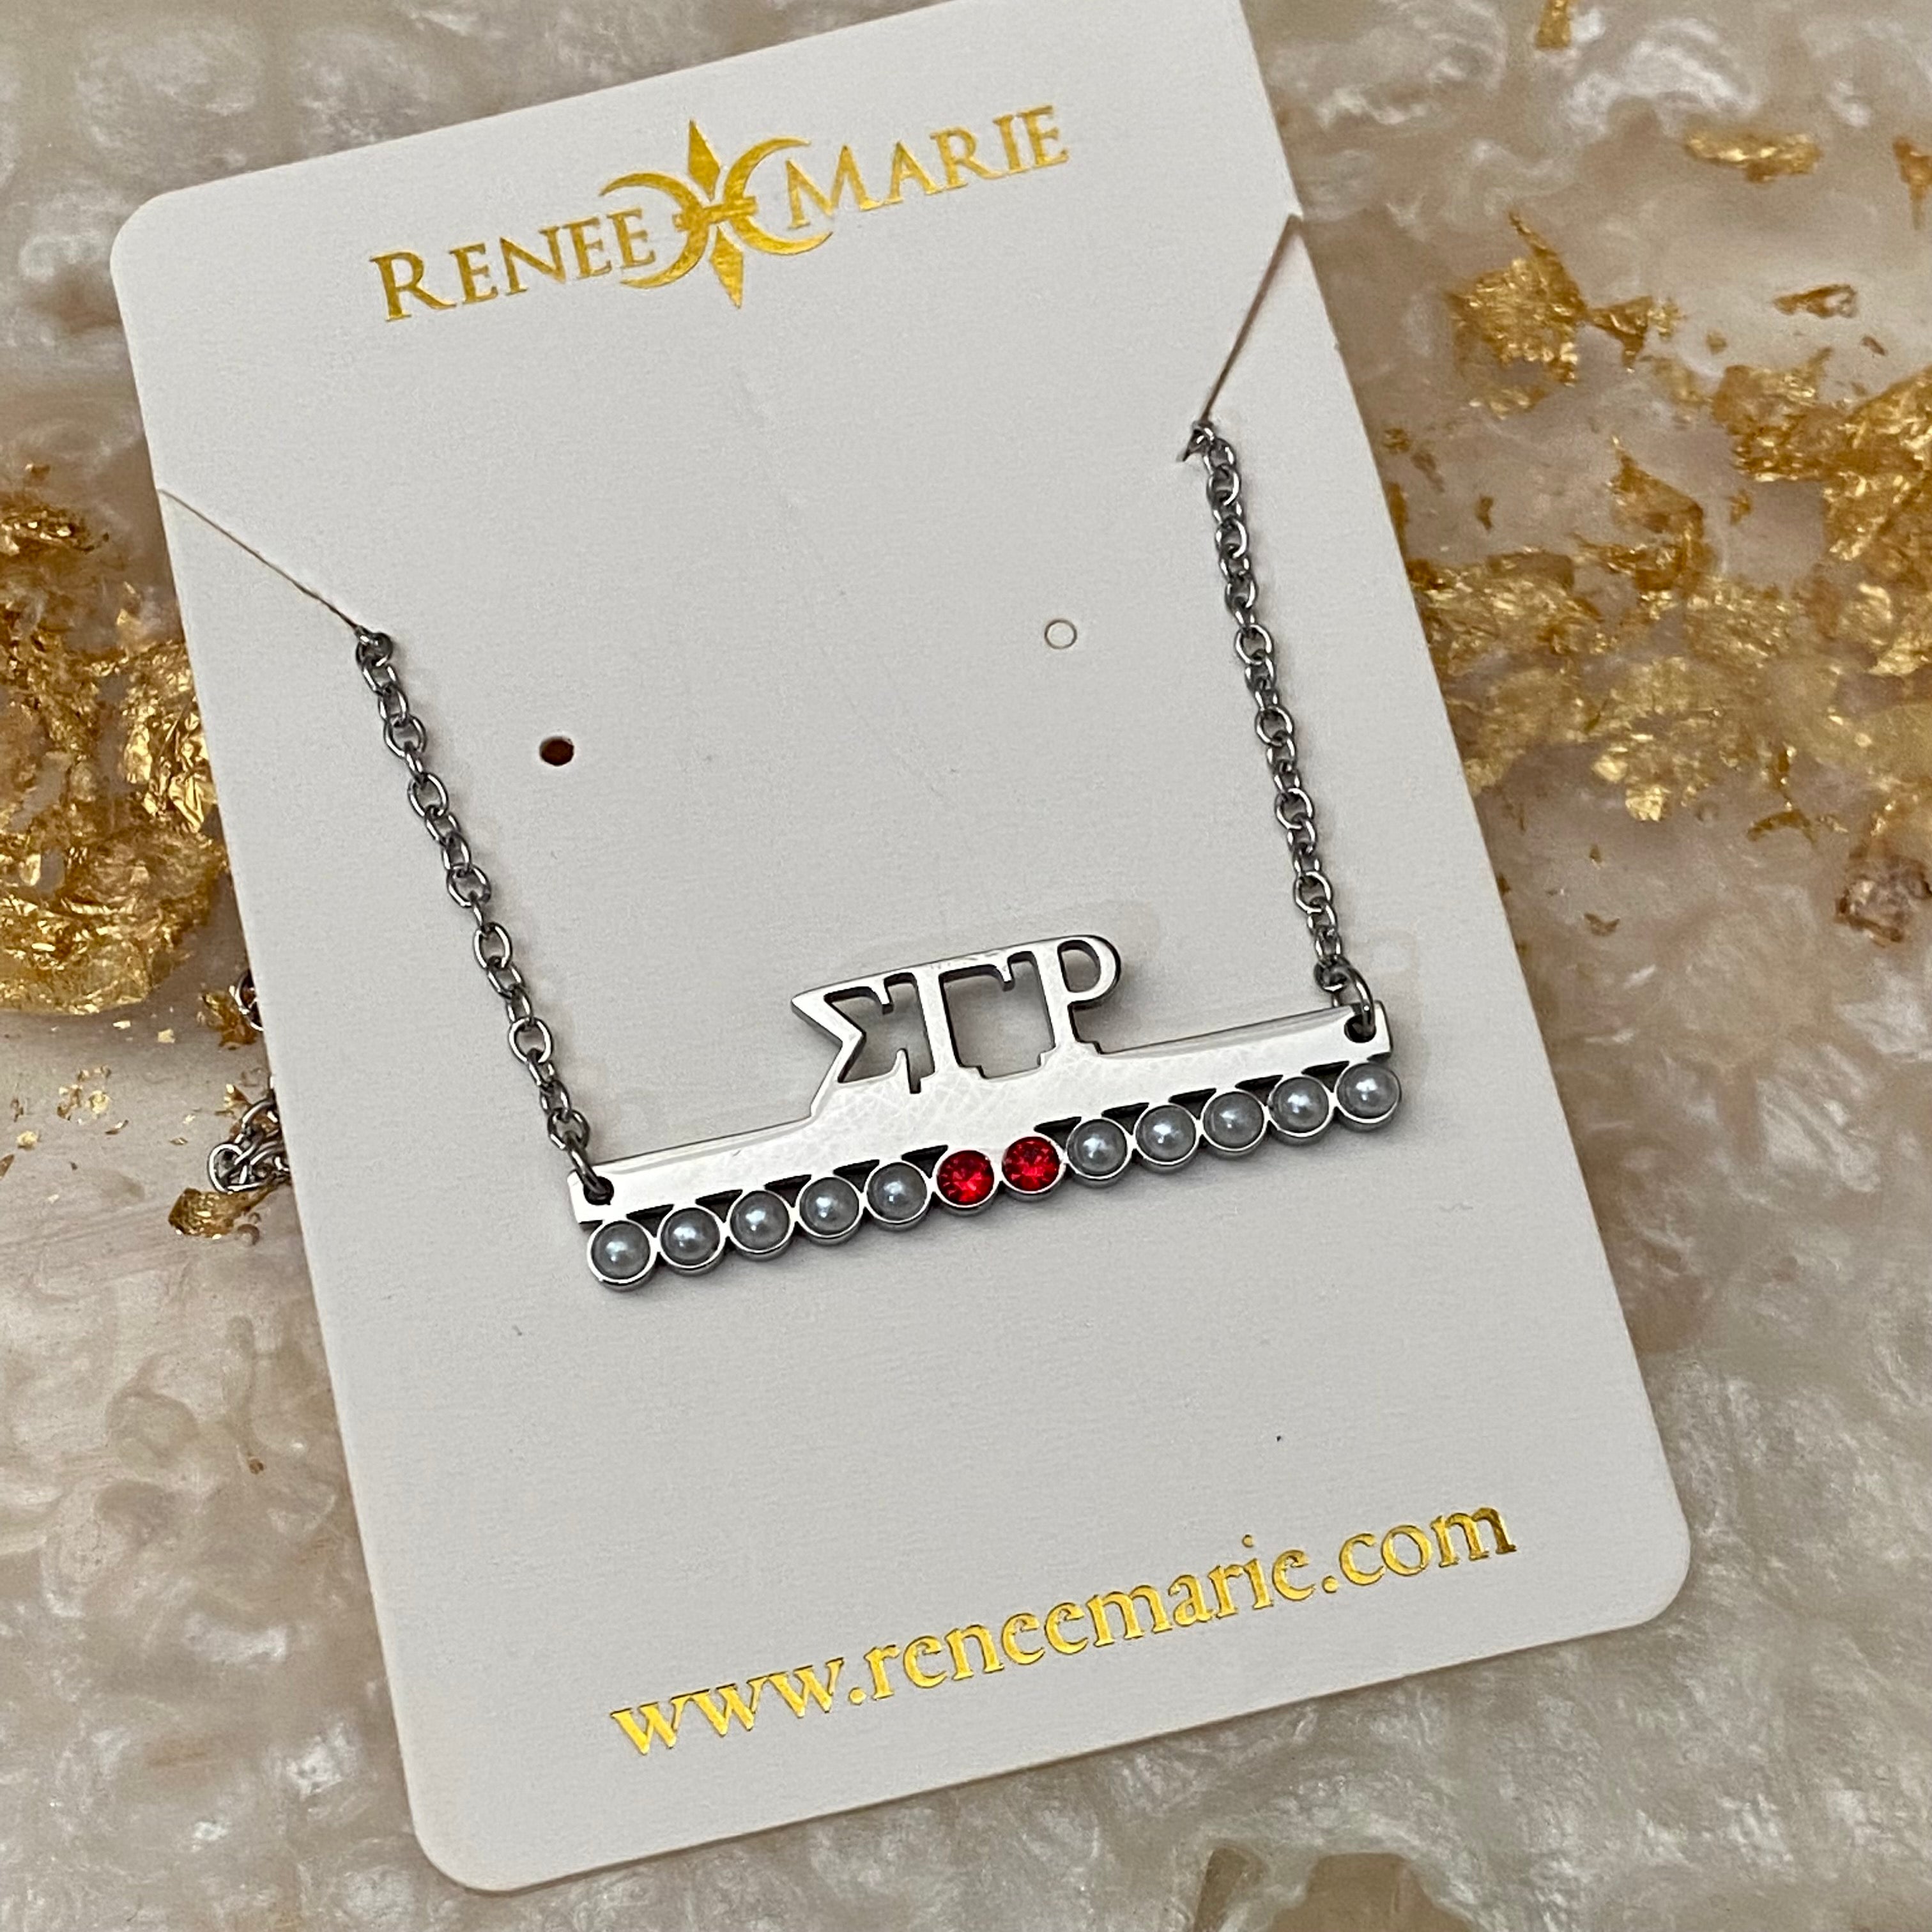 ΣΓΡ 10-2 Pearls and Rubies Bar Necklace (Stainless Steel)